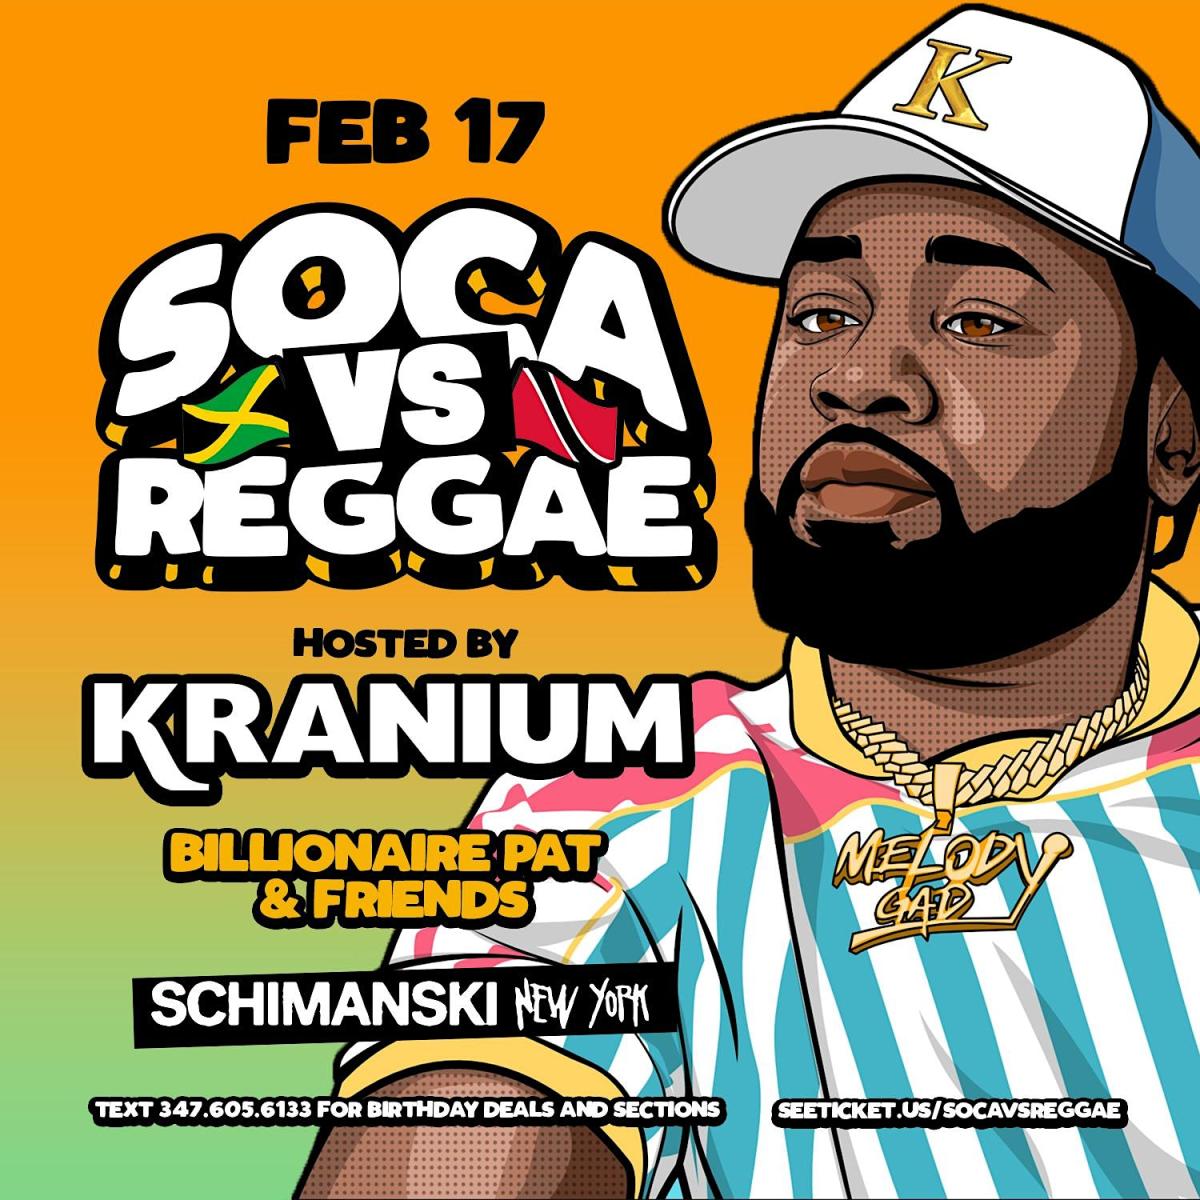 Soca Vs Reggae flyer or graphic.